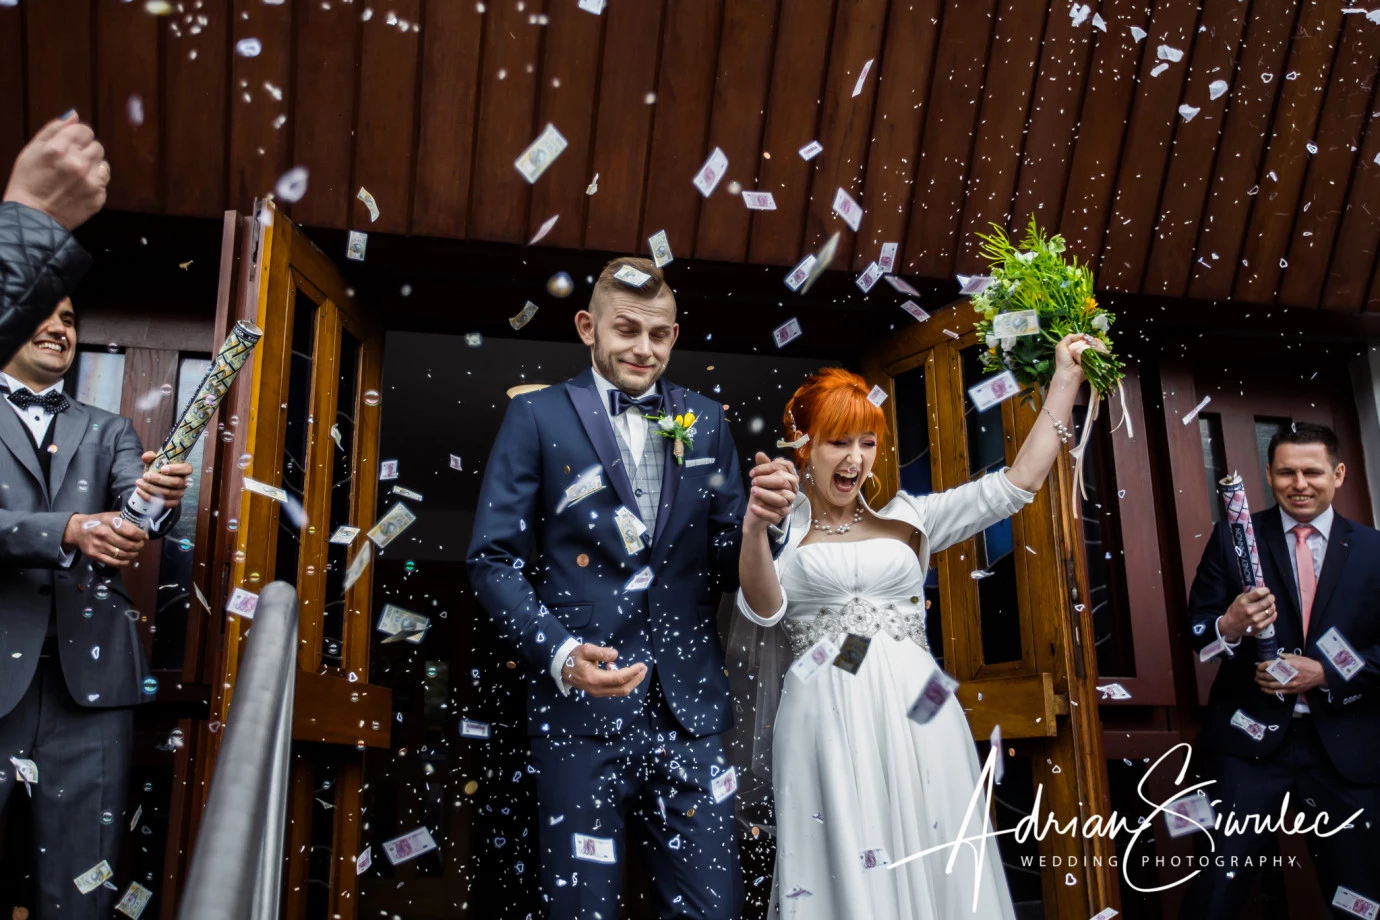 fotograf rzeszow adrian-siwulec-wedding-photography portfolio zdjecia slubne inspiracje wesele plener slubny sesja slubna